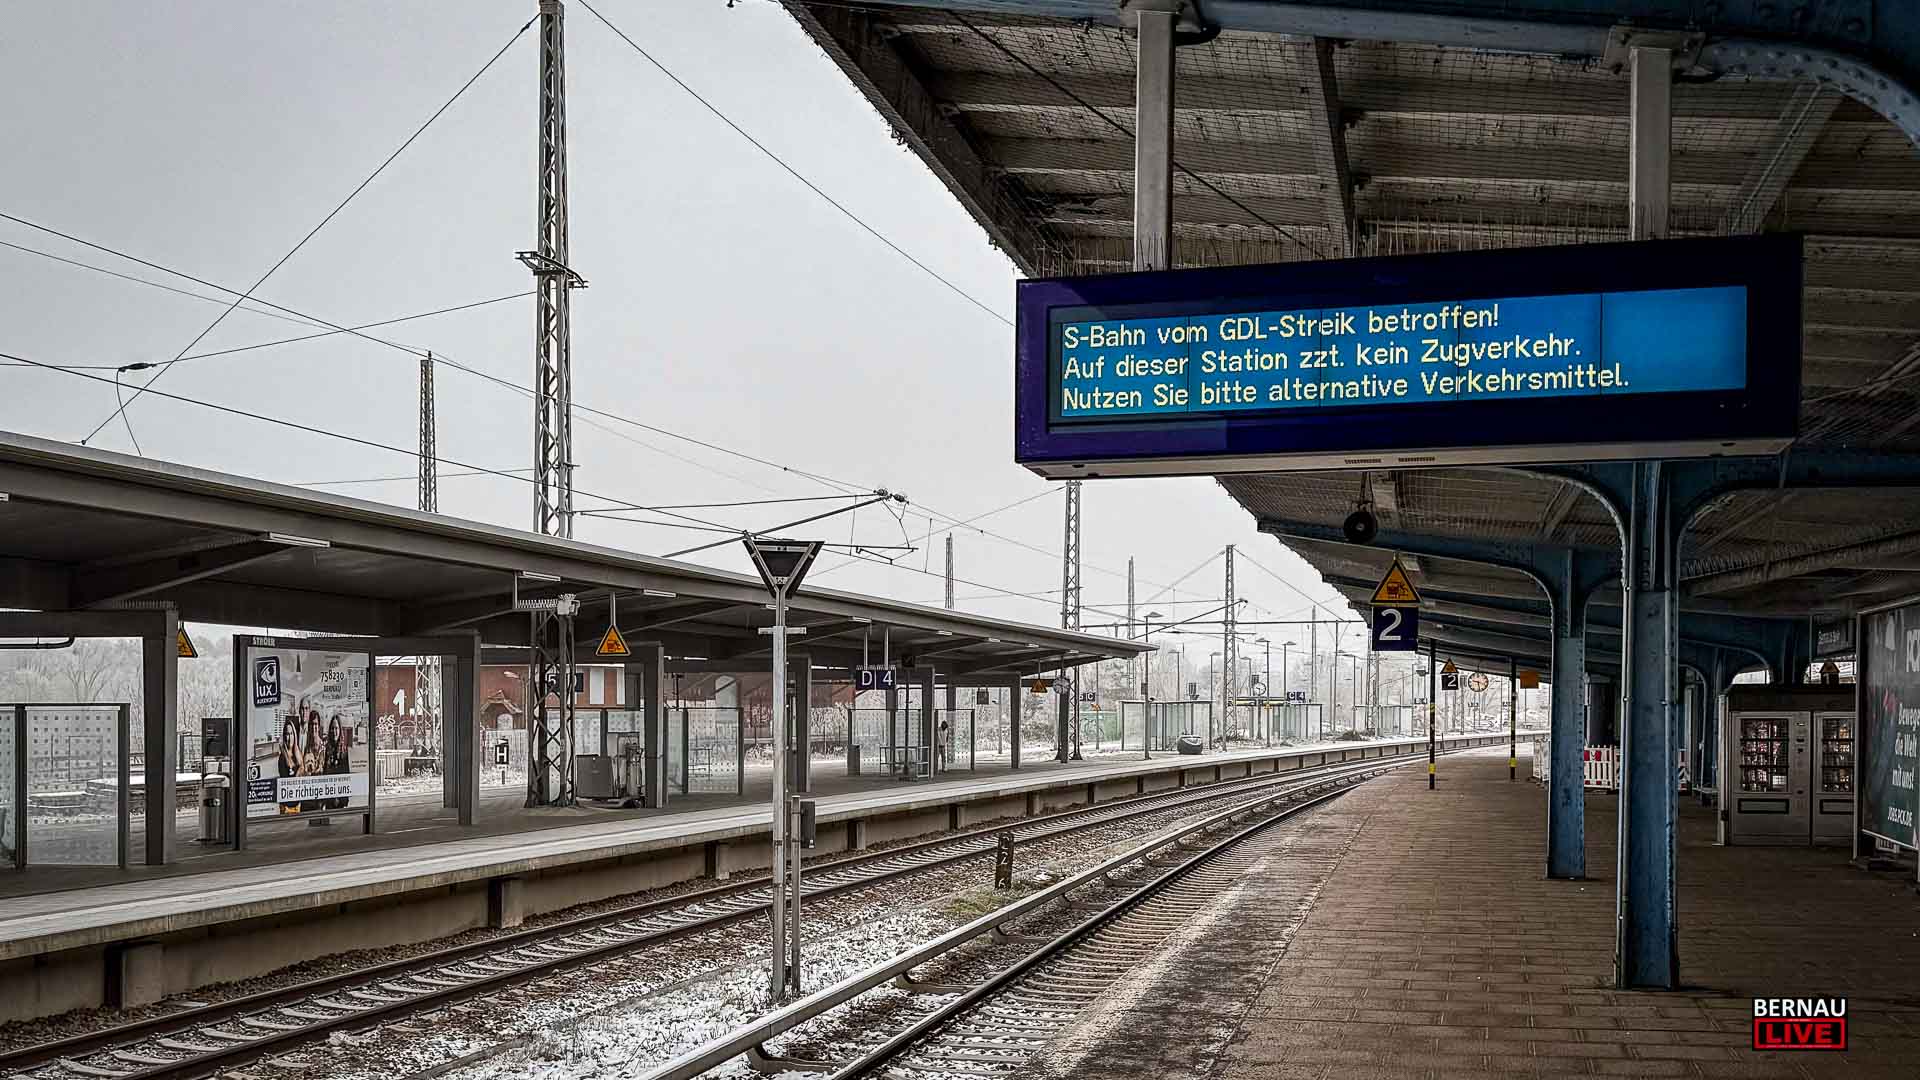 GDL-Streik bei der Bahn beendet - Bahnverkehr wird wieder aufgenommen